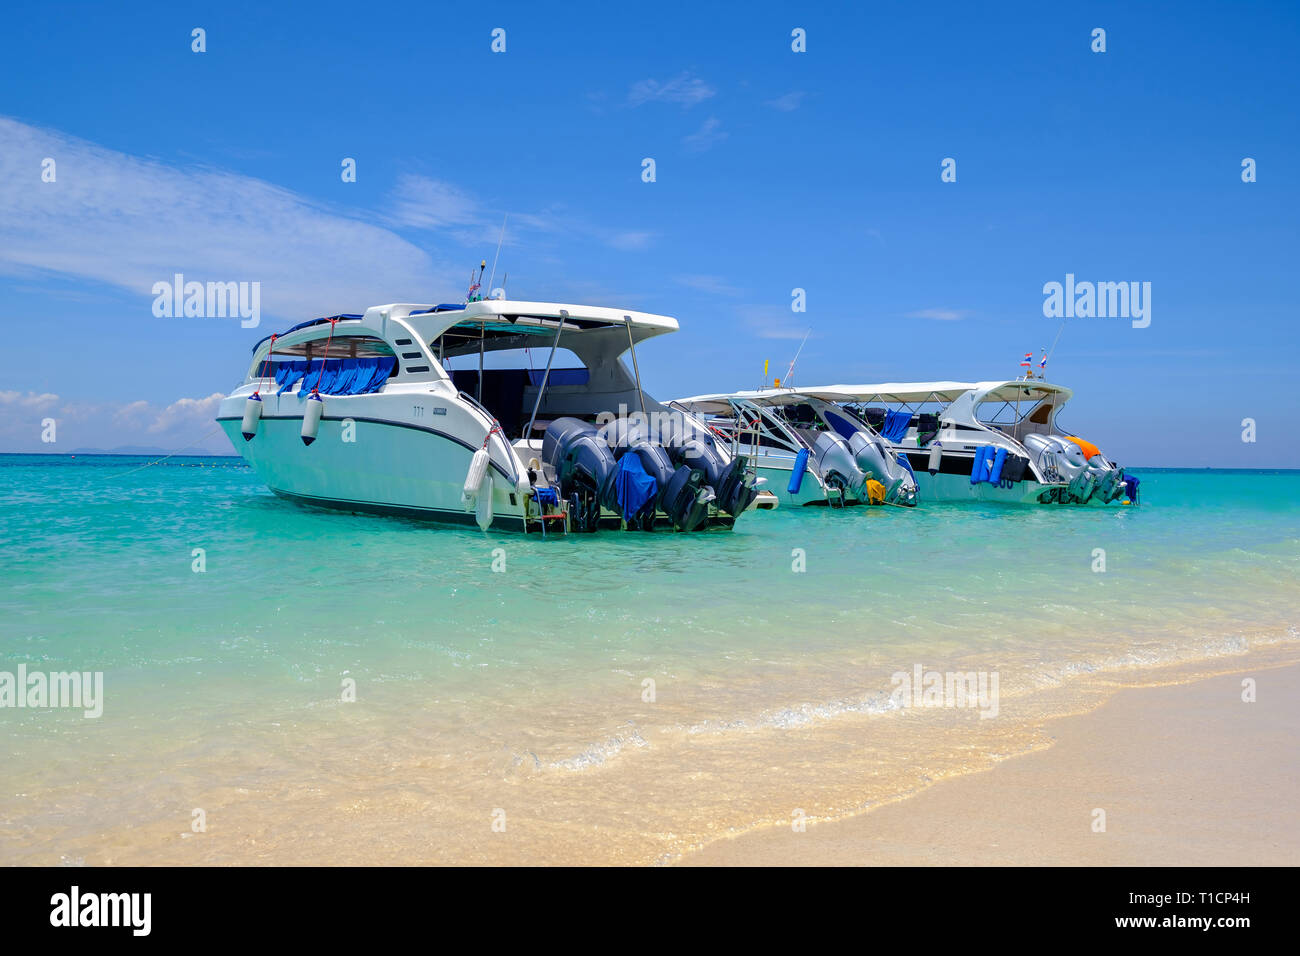 Motoscafi presso la bellissima spiaggia di Isola tropicale, in attesa dei passeggeri. Foto Stock